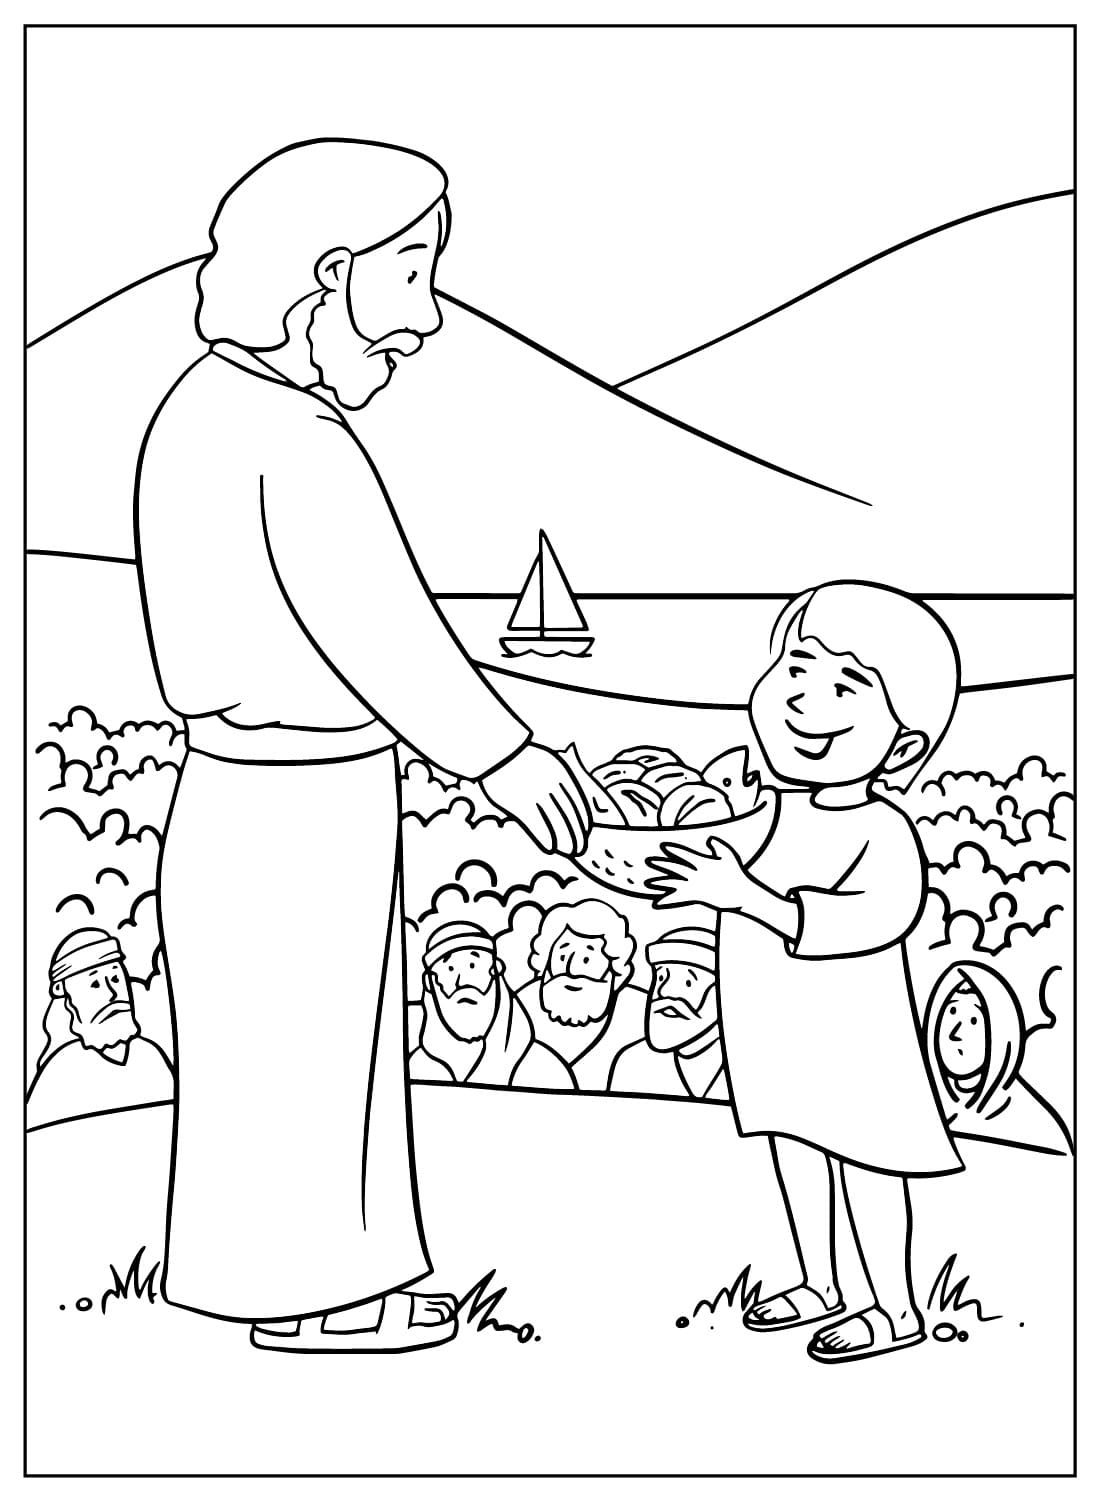 耶稣将耶稣的饼加倍给 5,000 人吃